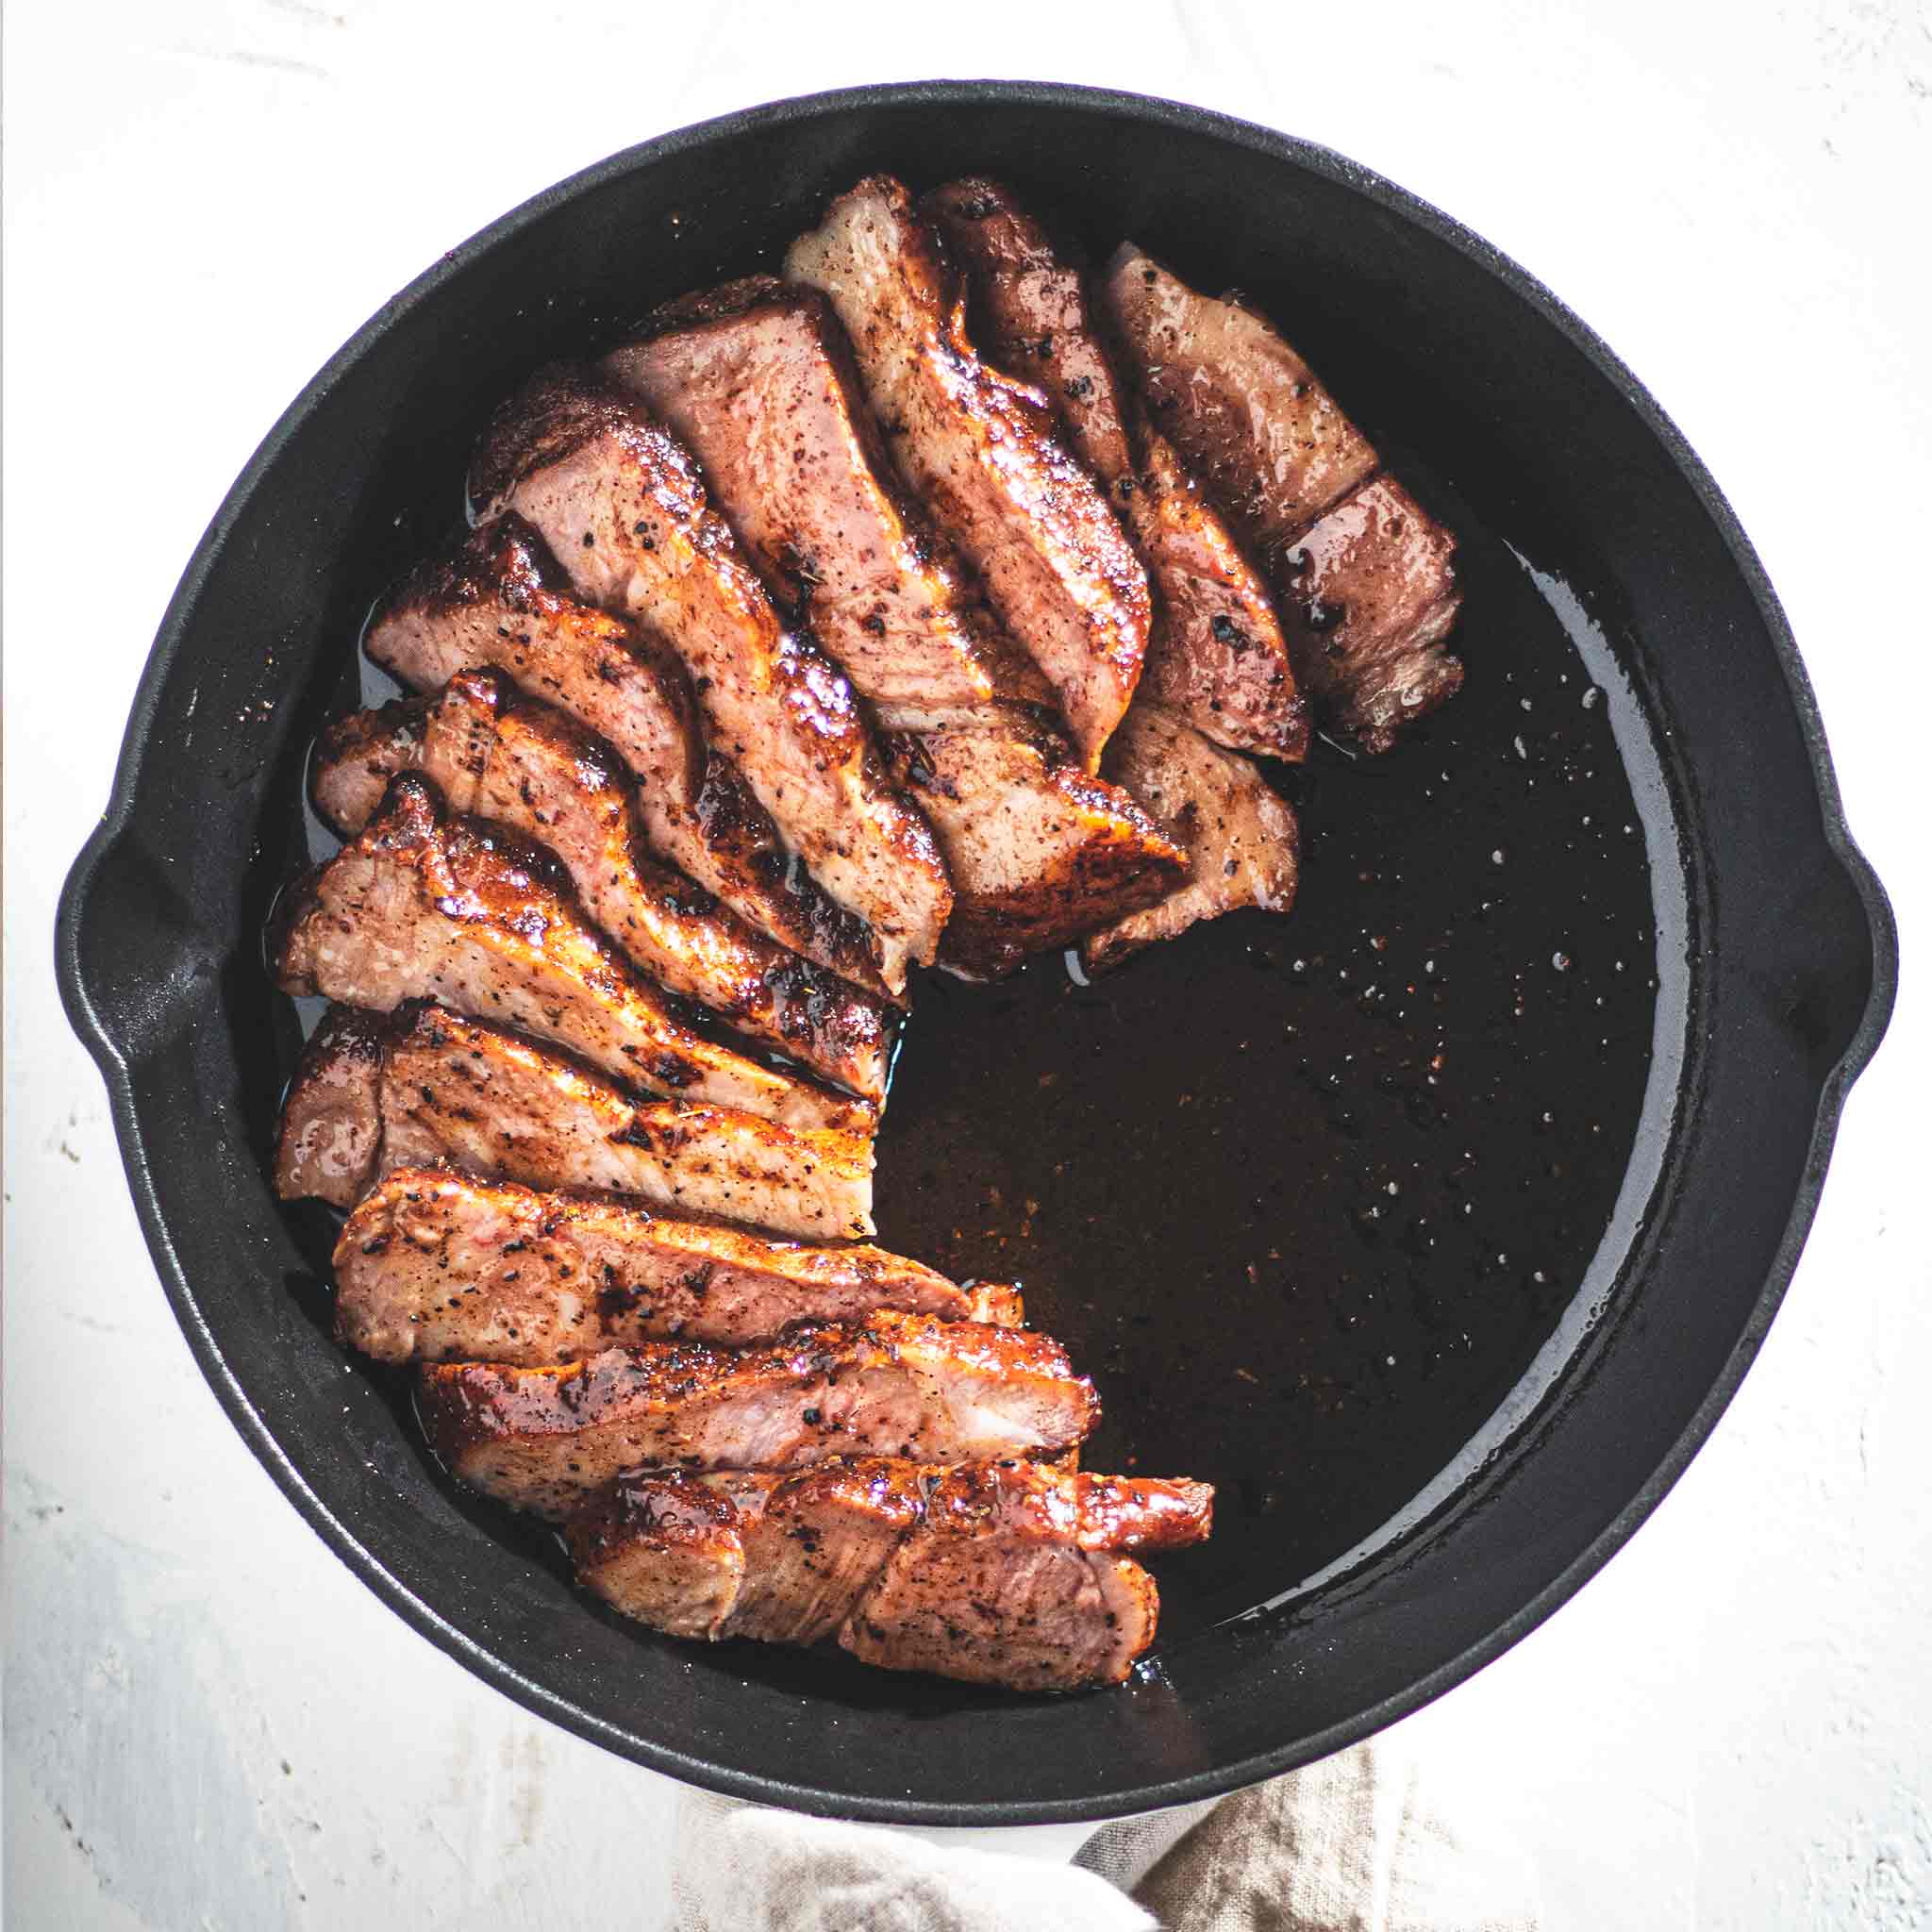 Pork shoulder steaks in a cast iron skillet